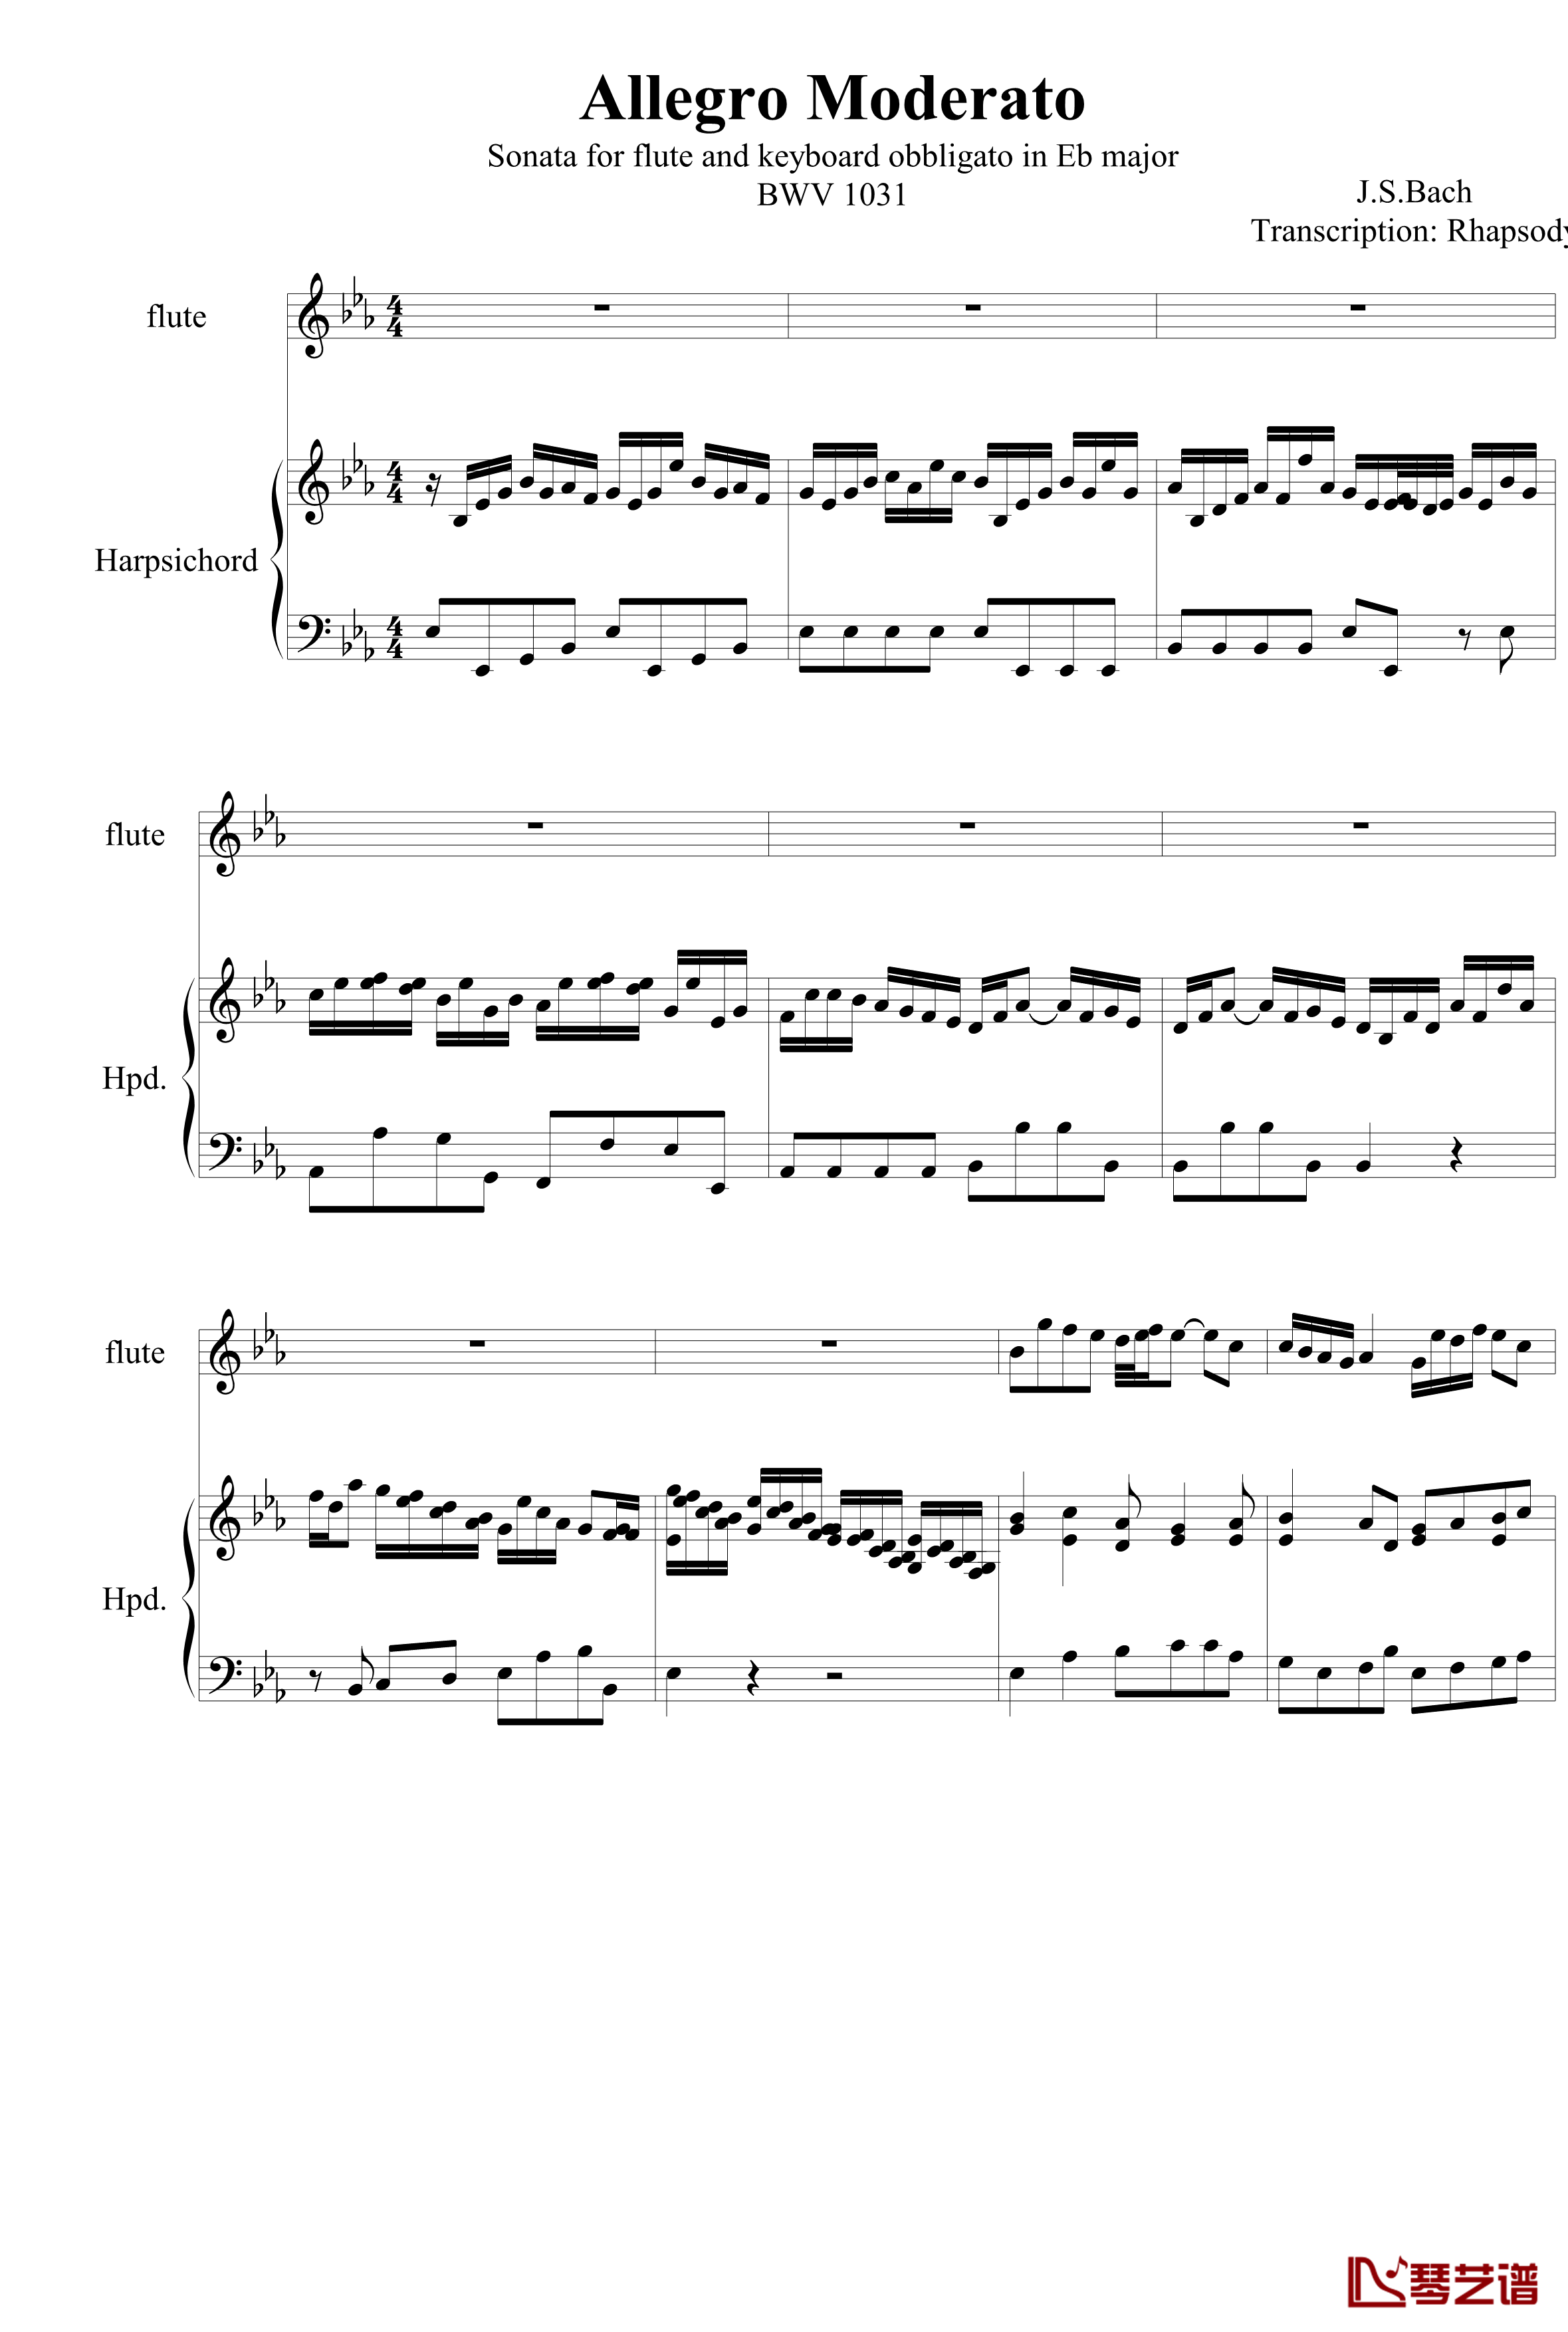 羽管键琴协奏曲BWV1031第一乐章钢琴谱-巴赫-P.E.Bach